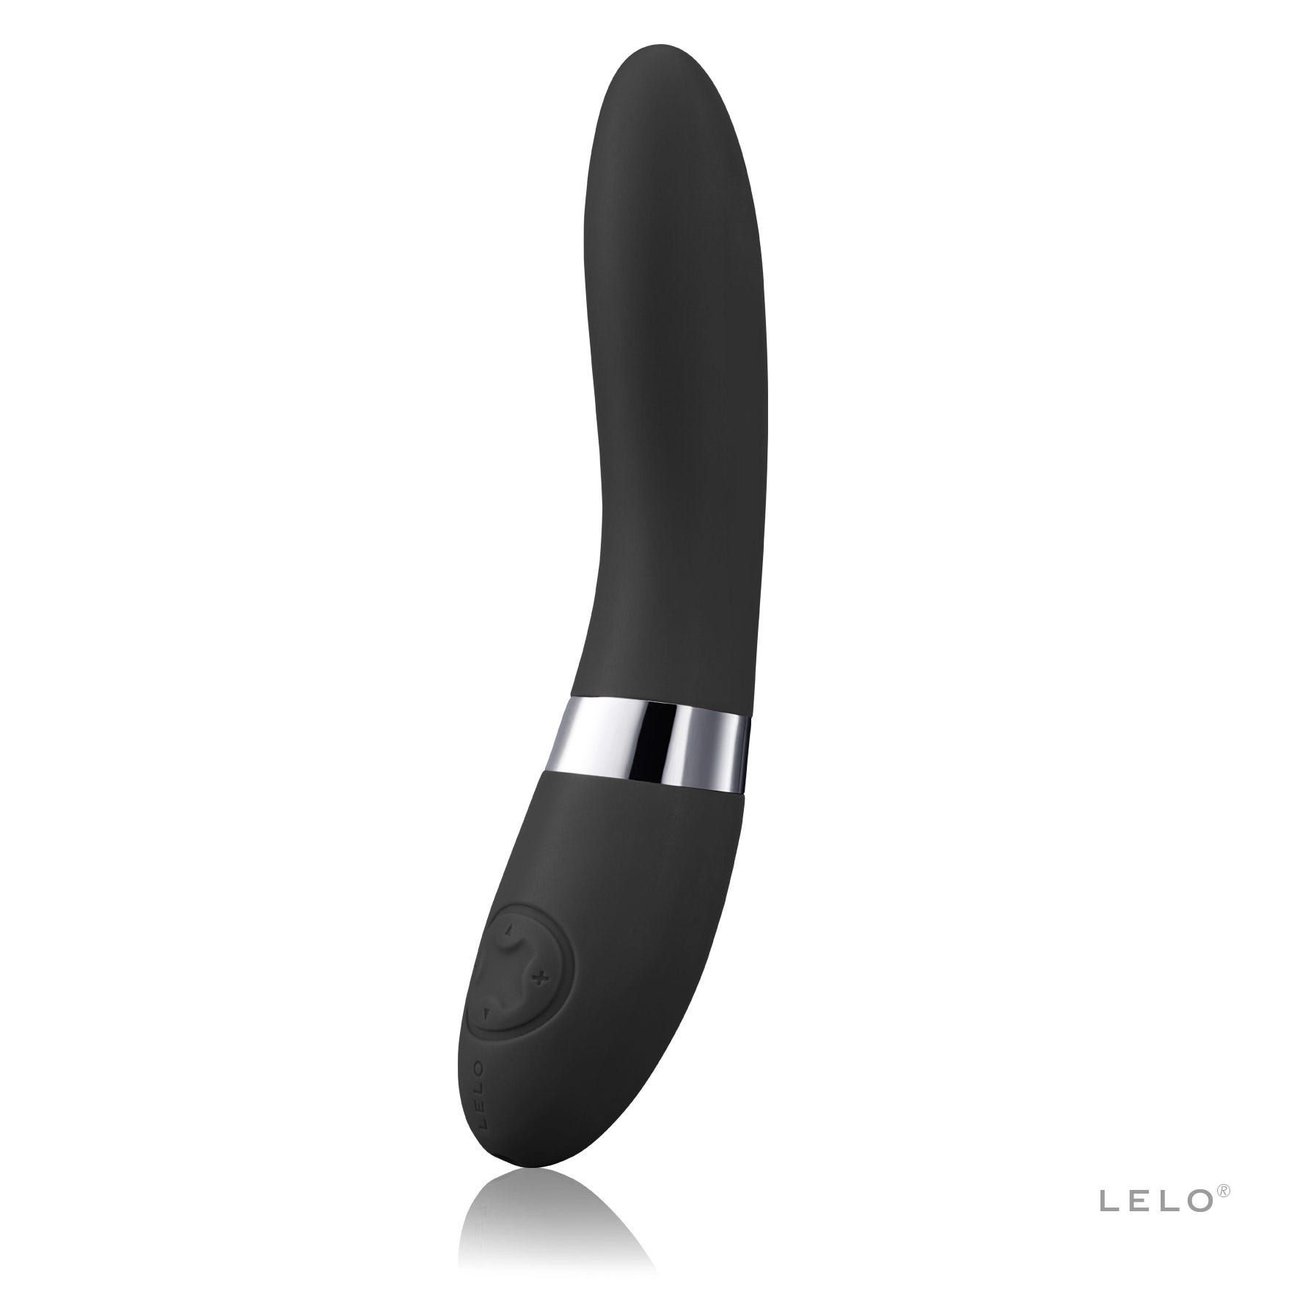 LELO - Elise 2 G-Spot Vibrator